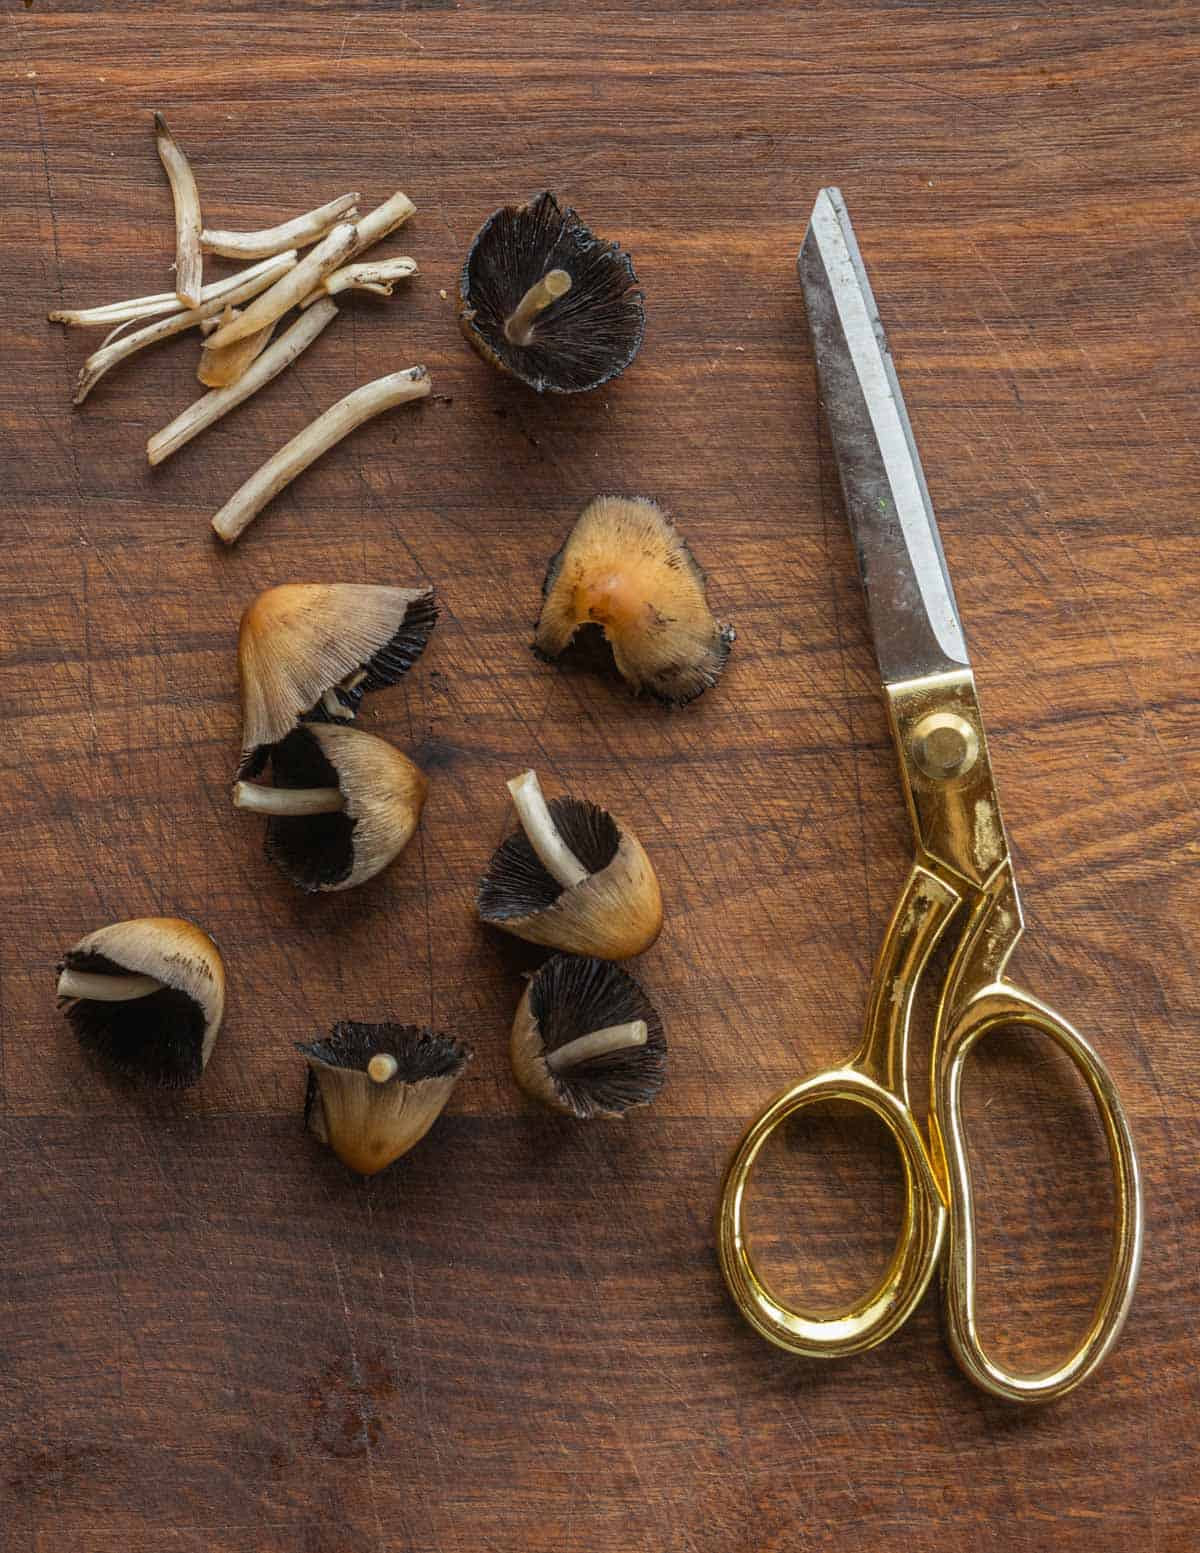 Cutting mica cap mushrooms with a scissors to trim the stems. 